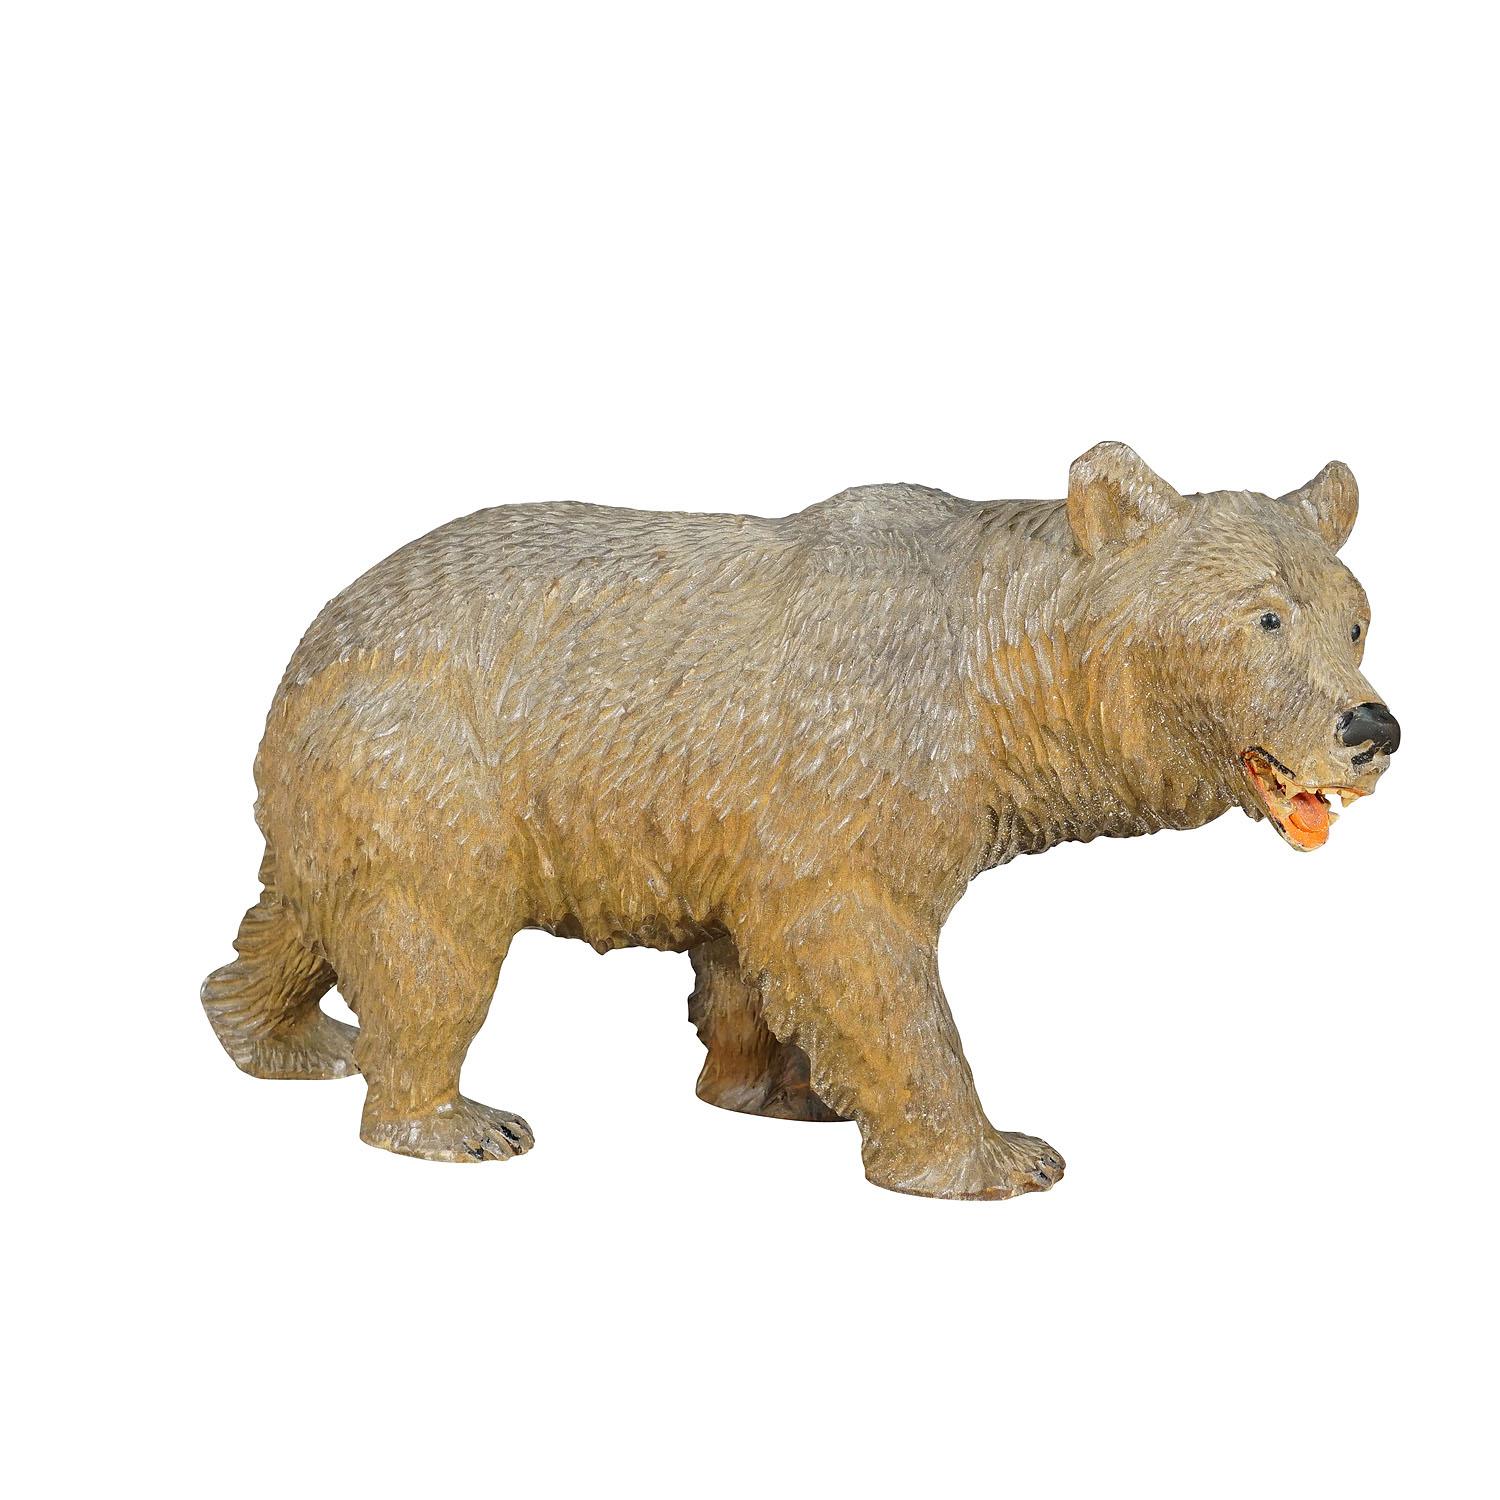 Ancien ours de marche en bois sculpté à la main à Brienz, vers 1930

Statue vintage d'un ours marcheur de la Forêt-Noire. En bois de tilleul, finement sculpté à la main avec des détails naturalistes à Brienz, en Suisse, vers les années 1930. Un